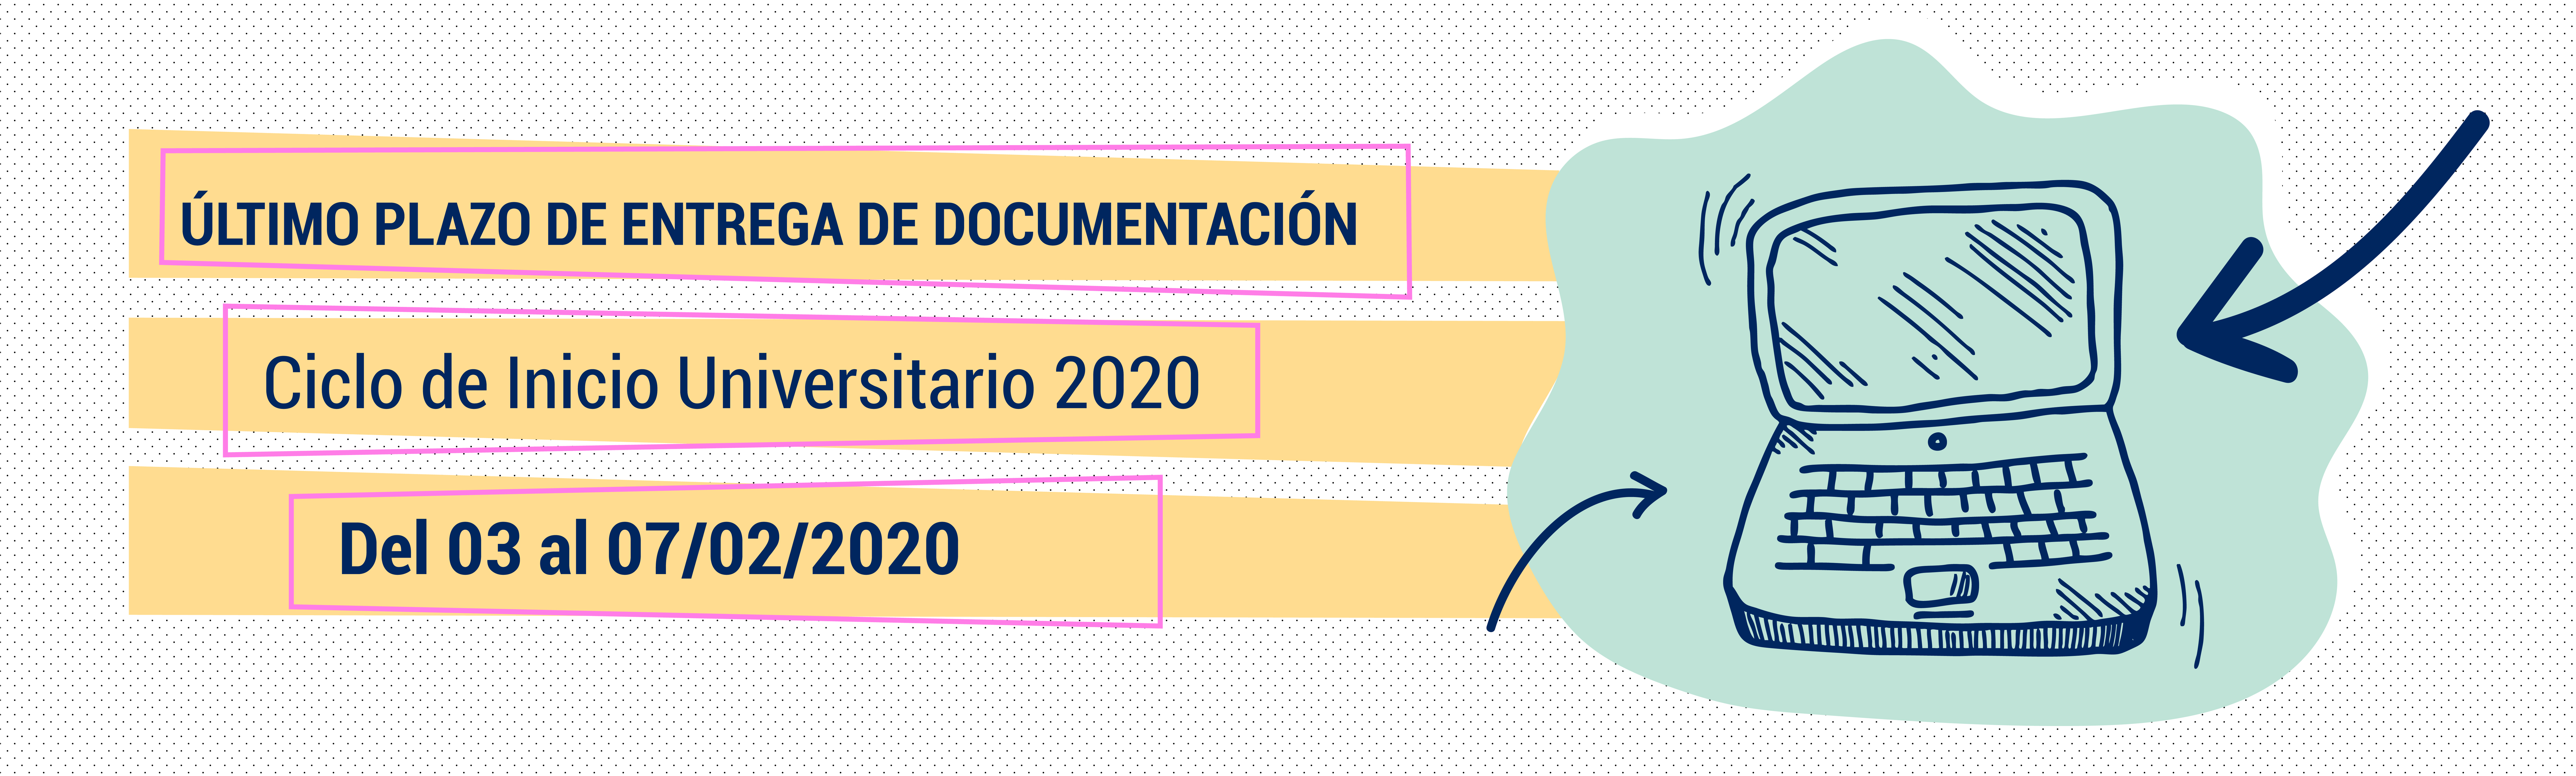 Último plazo de entrega de documentación para inscripción al CIU 2020